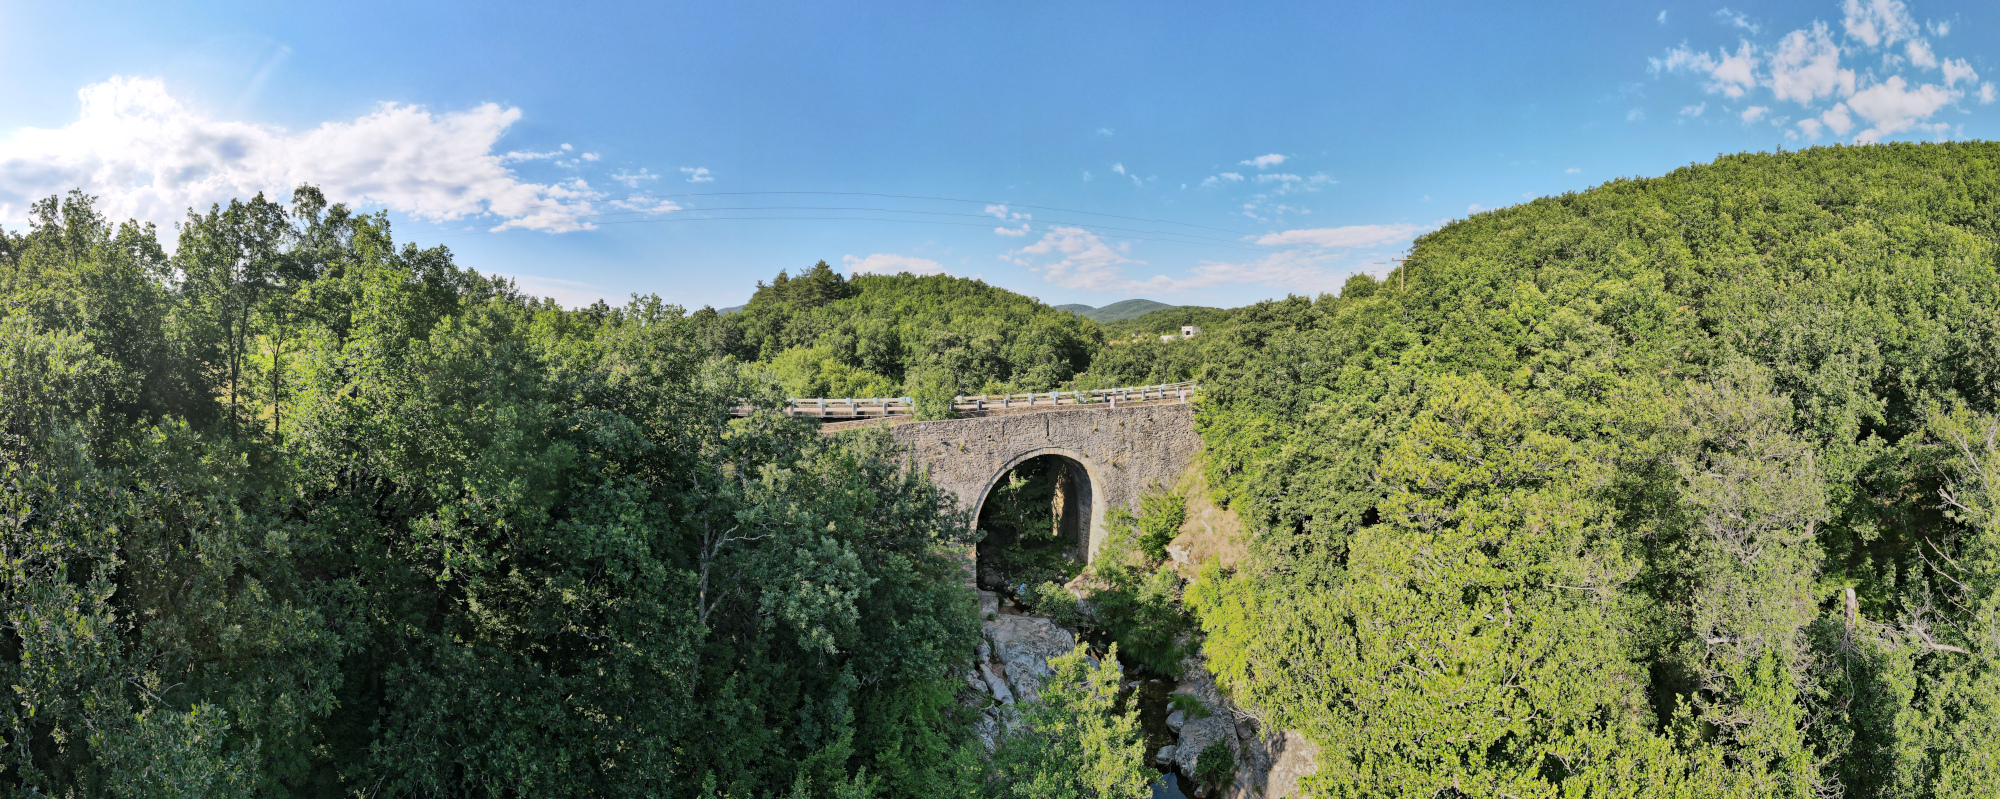 bridge-of-sidiro